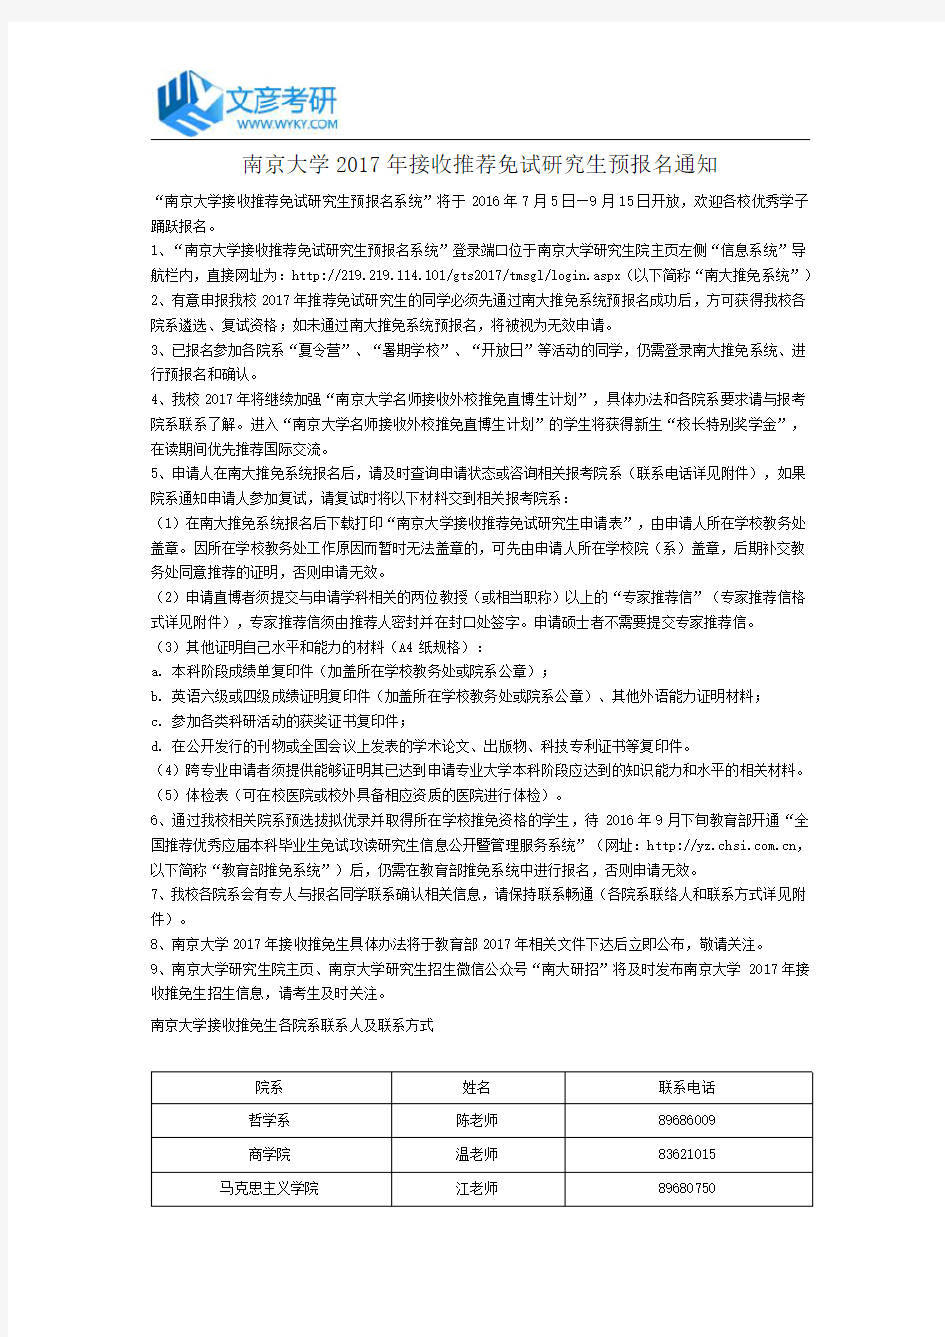 南京大学2017年接收推荐免试研究生预报名通知